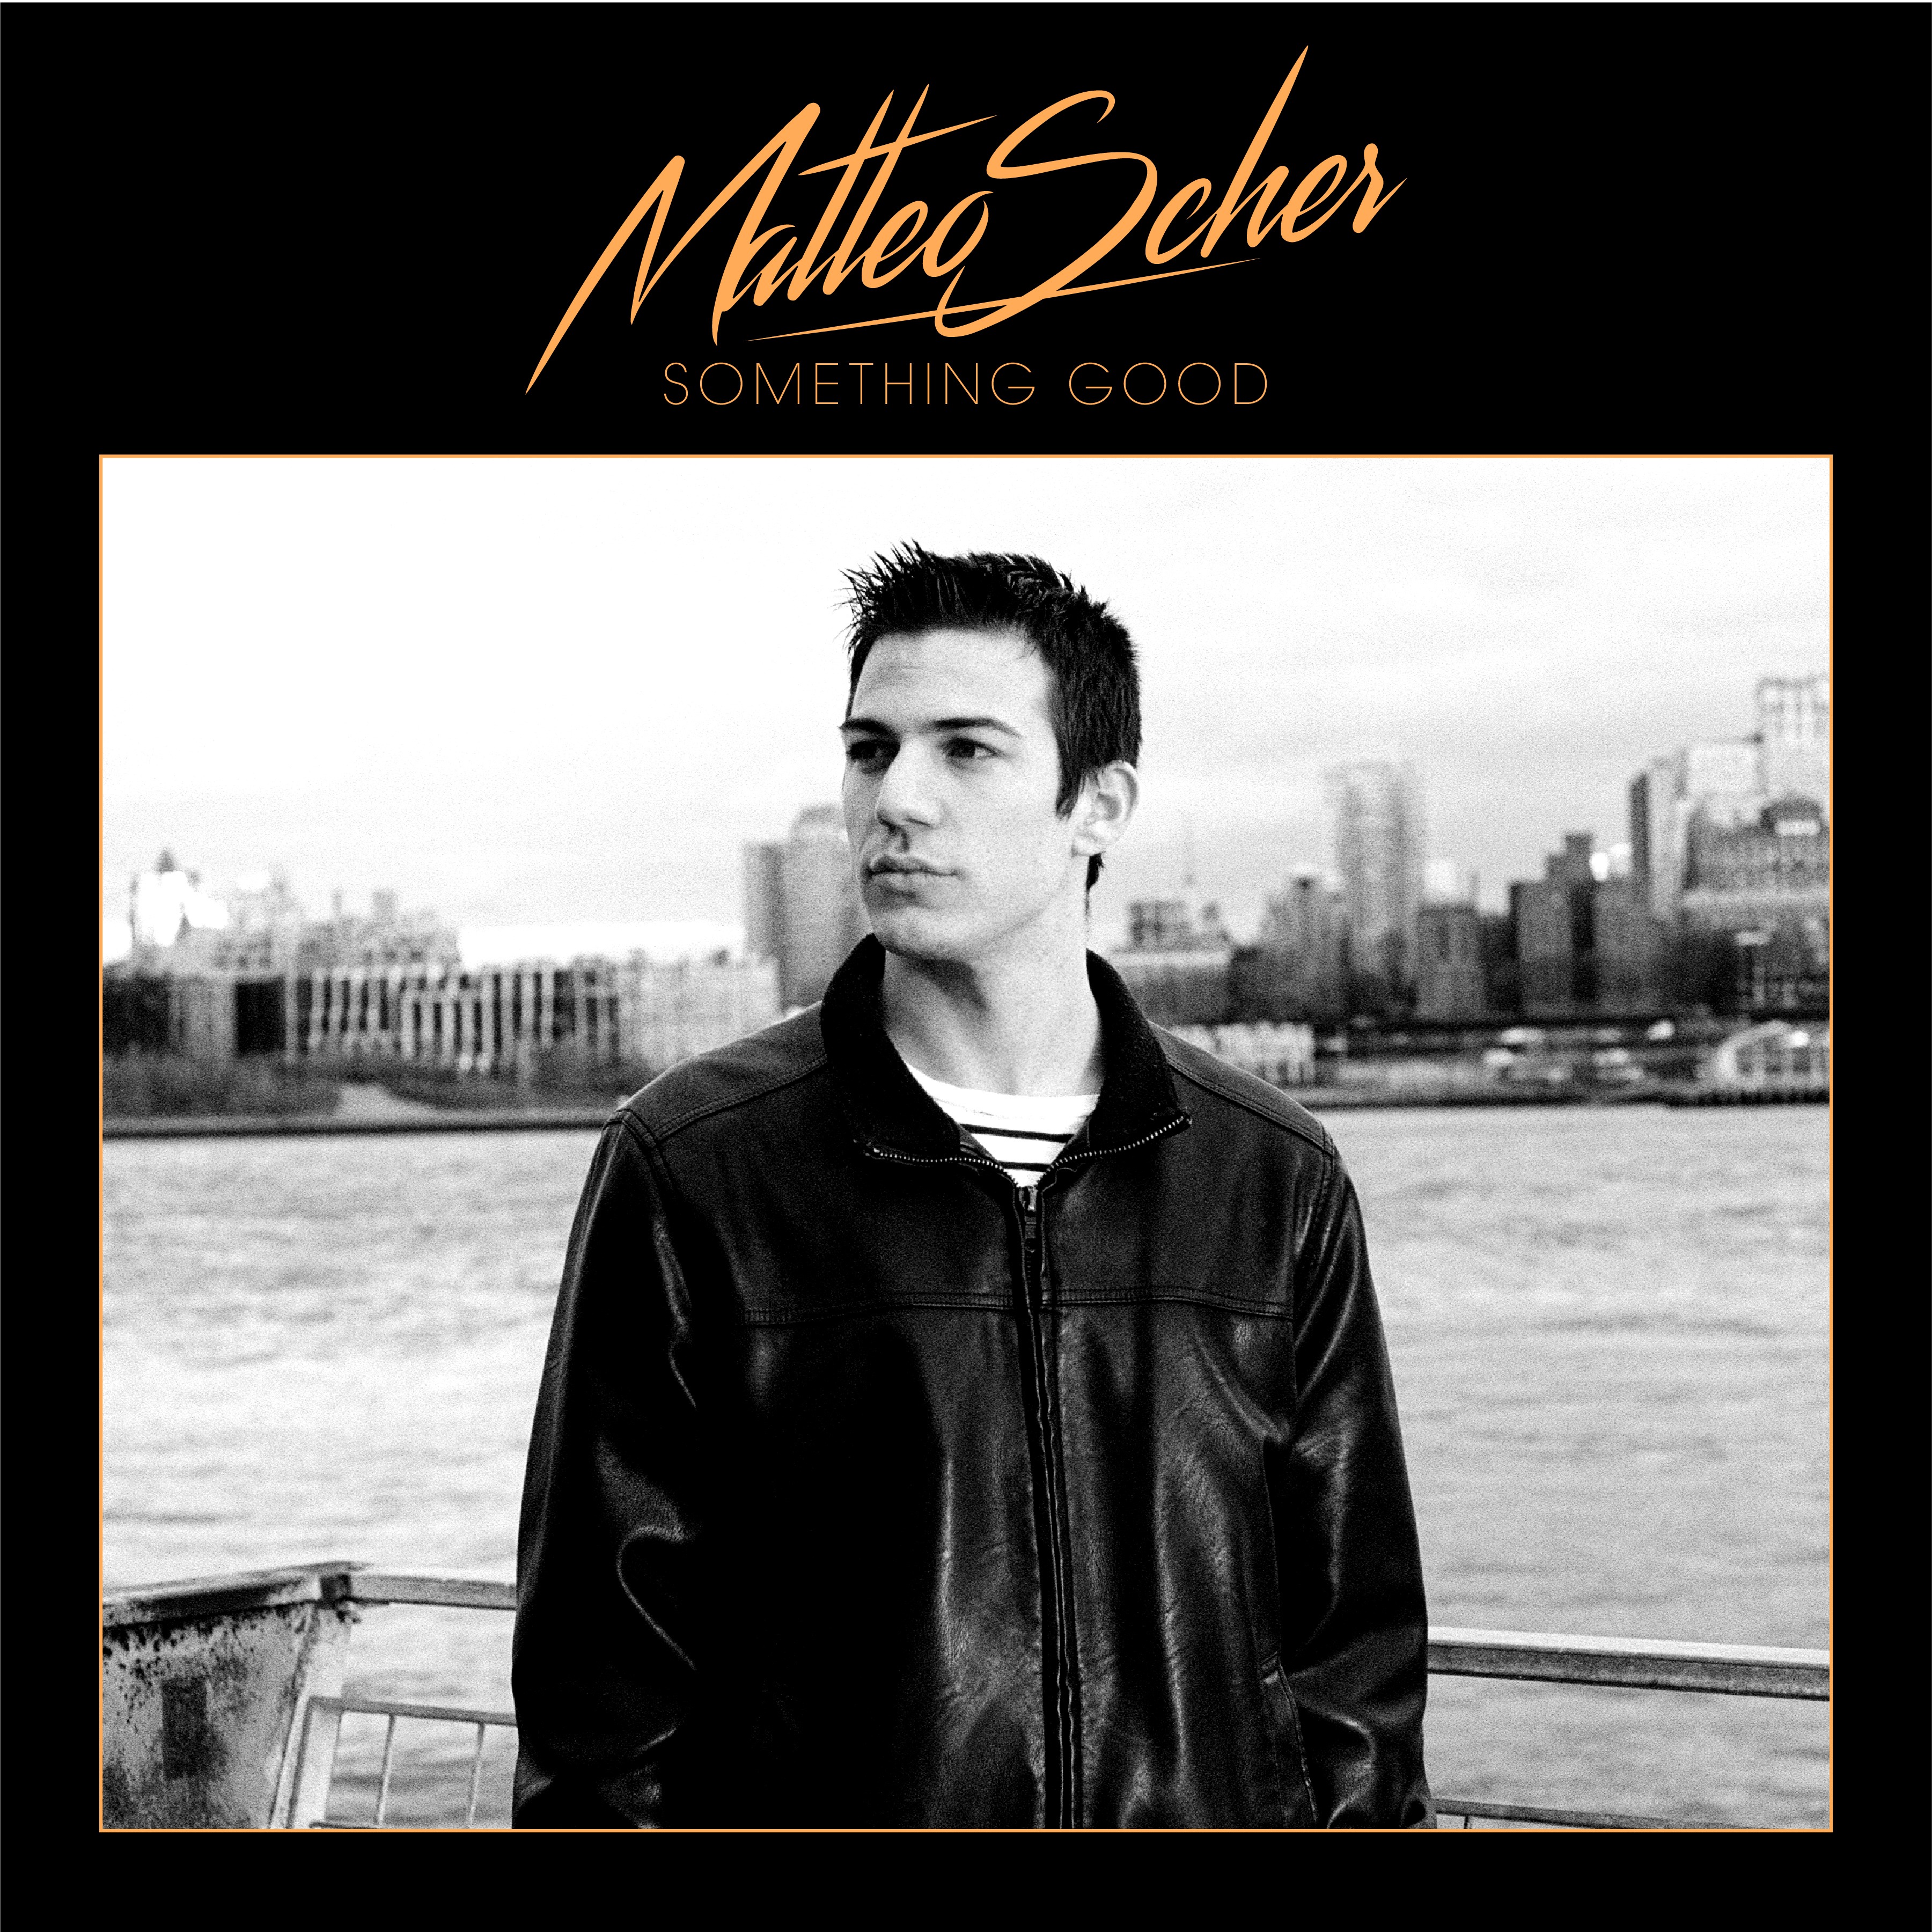 Matteo Scher's 'Something Good' EP